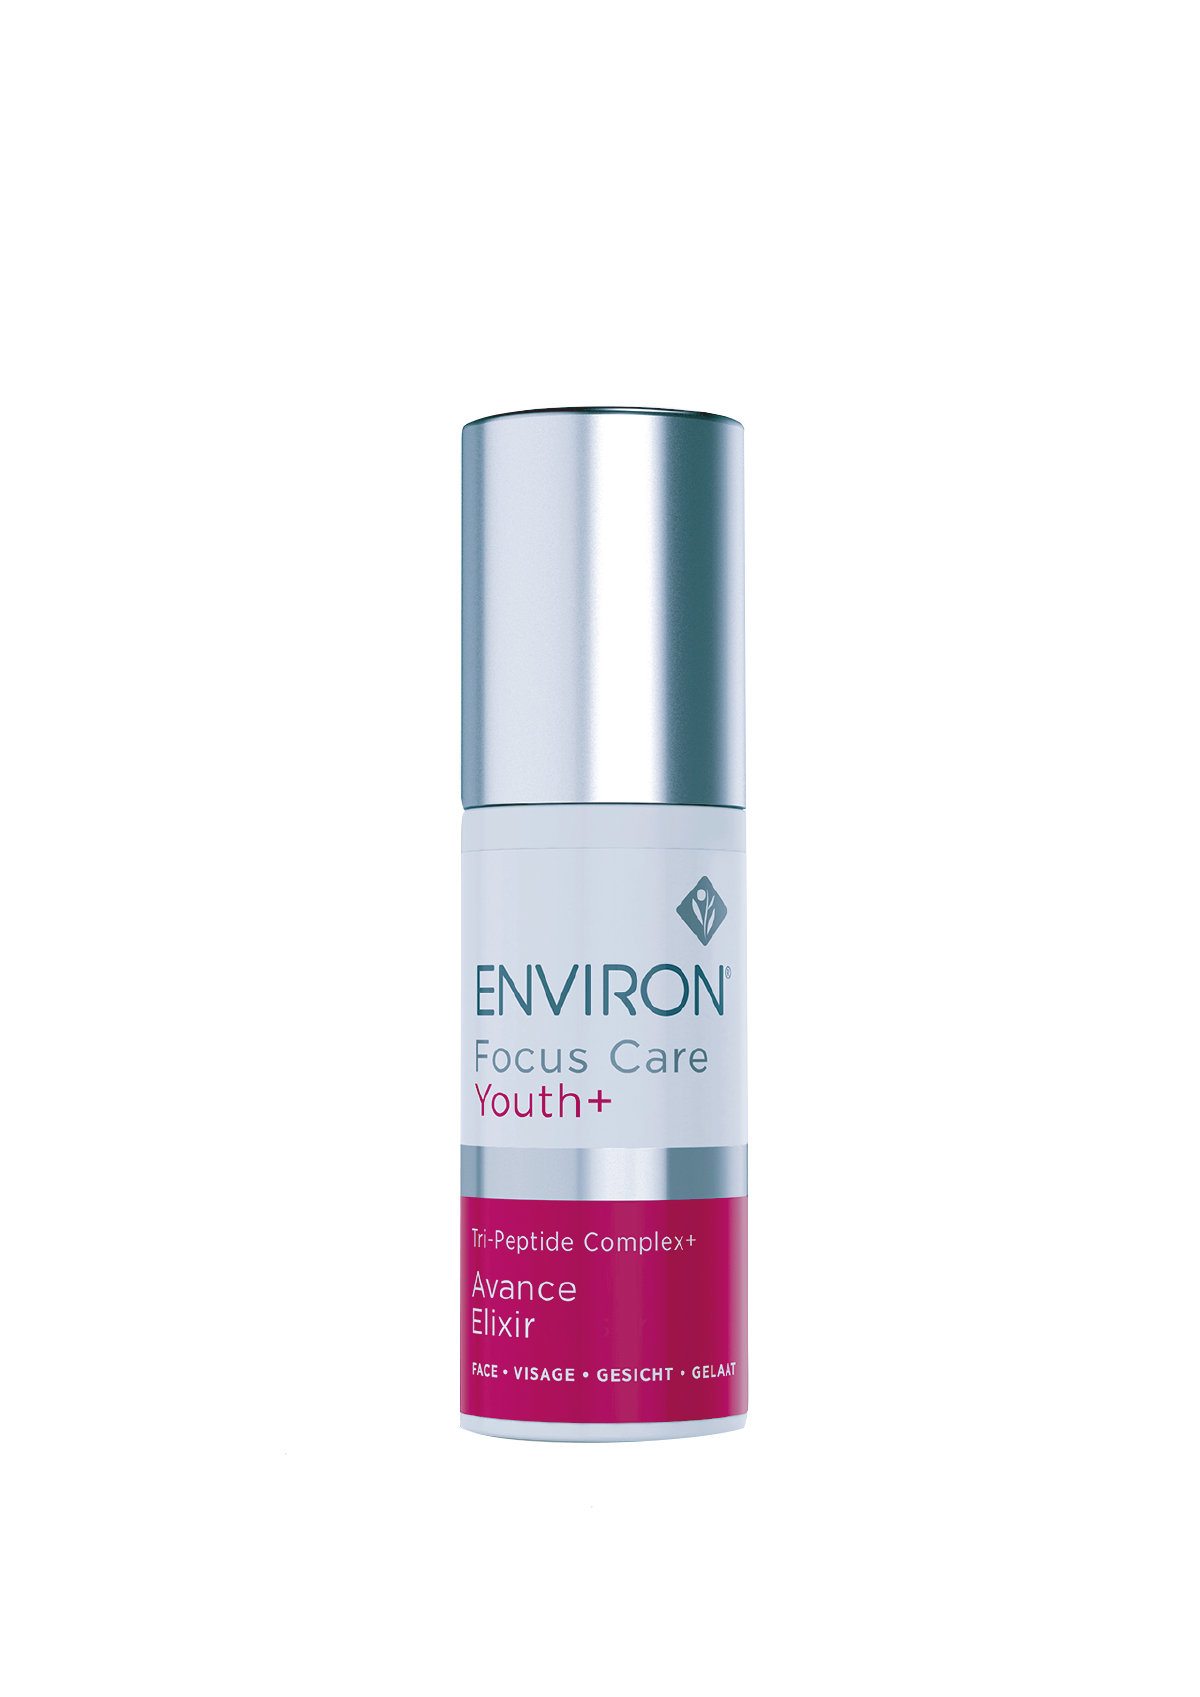 ENVIRON TRI-PEPTIDE COMPLEX AVANCE ELIXIR - Vähentää UV-säteilyn ja ilmansaasteiden iholle aiheuttamaa oksidatiivista stressiä. Kasvoseerumi